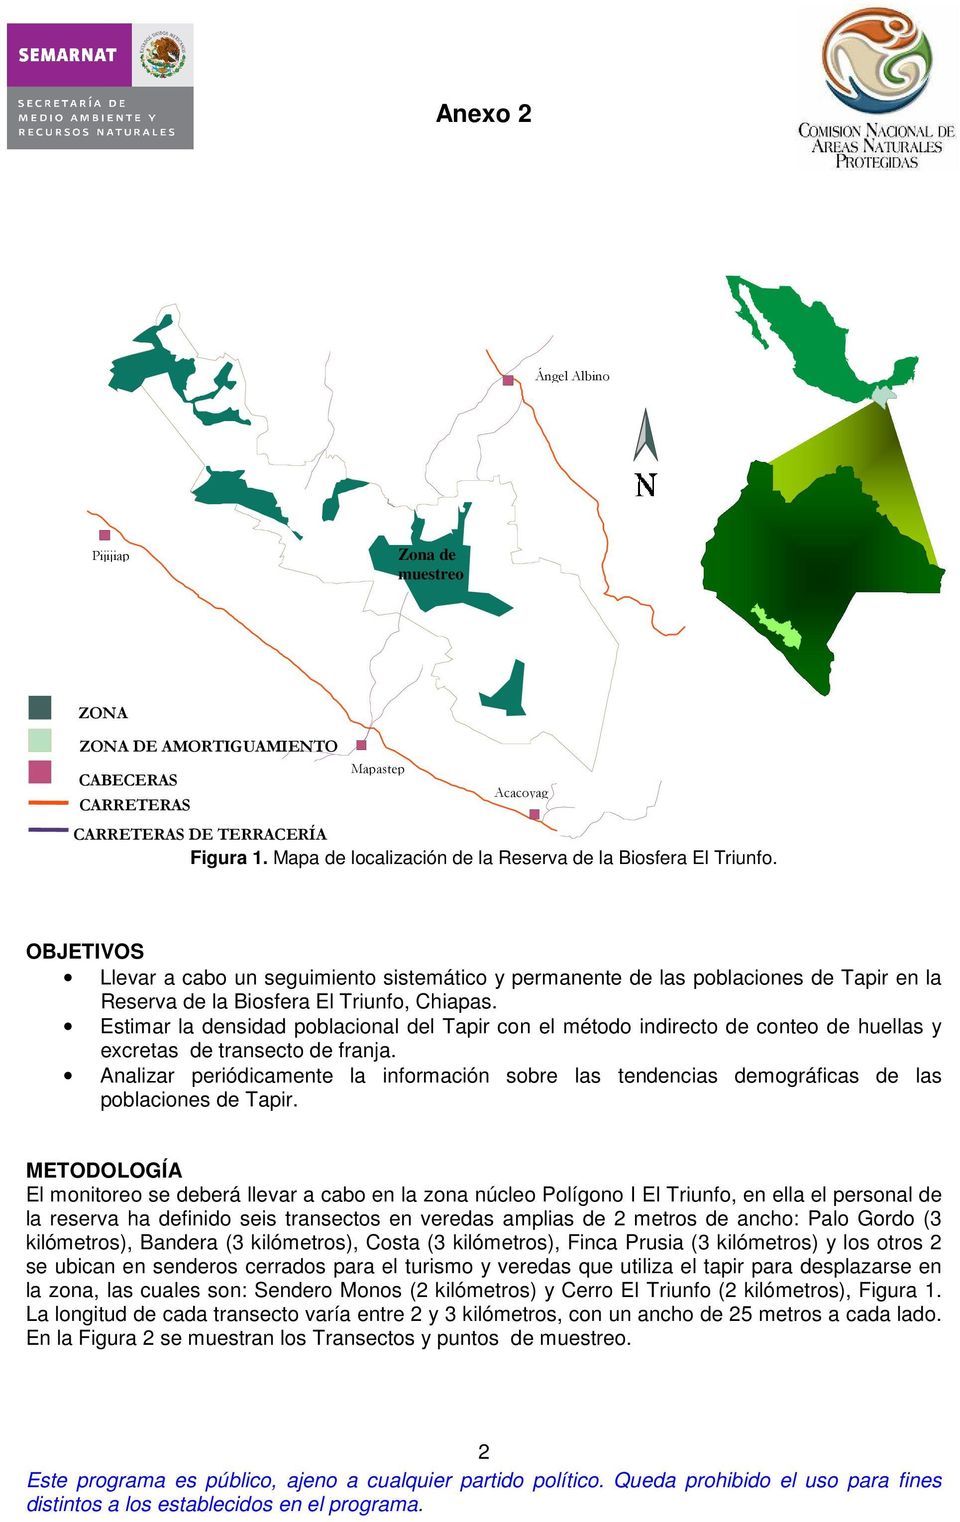 OBJETIVOS Llevar a cabo un seguimiento sistemático y permanente de las poblaciones de Tapir en la Reserva de la Biosfera El Triunfo, Chiapas.